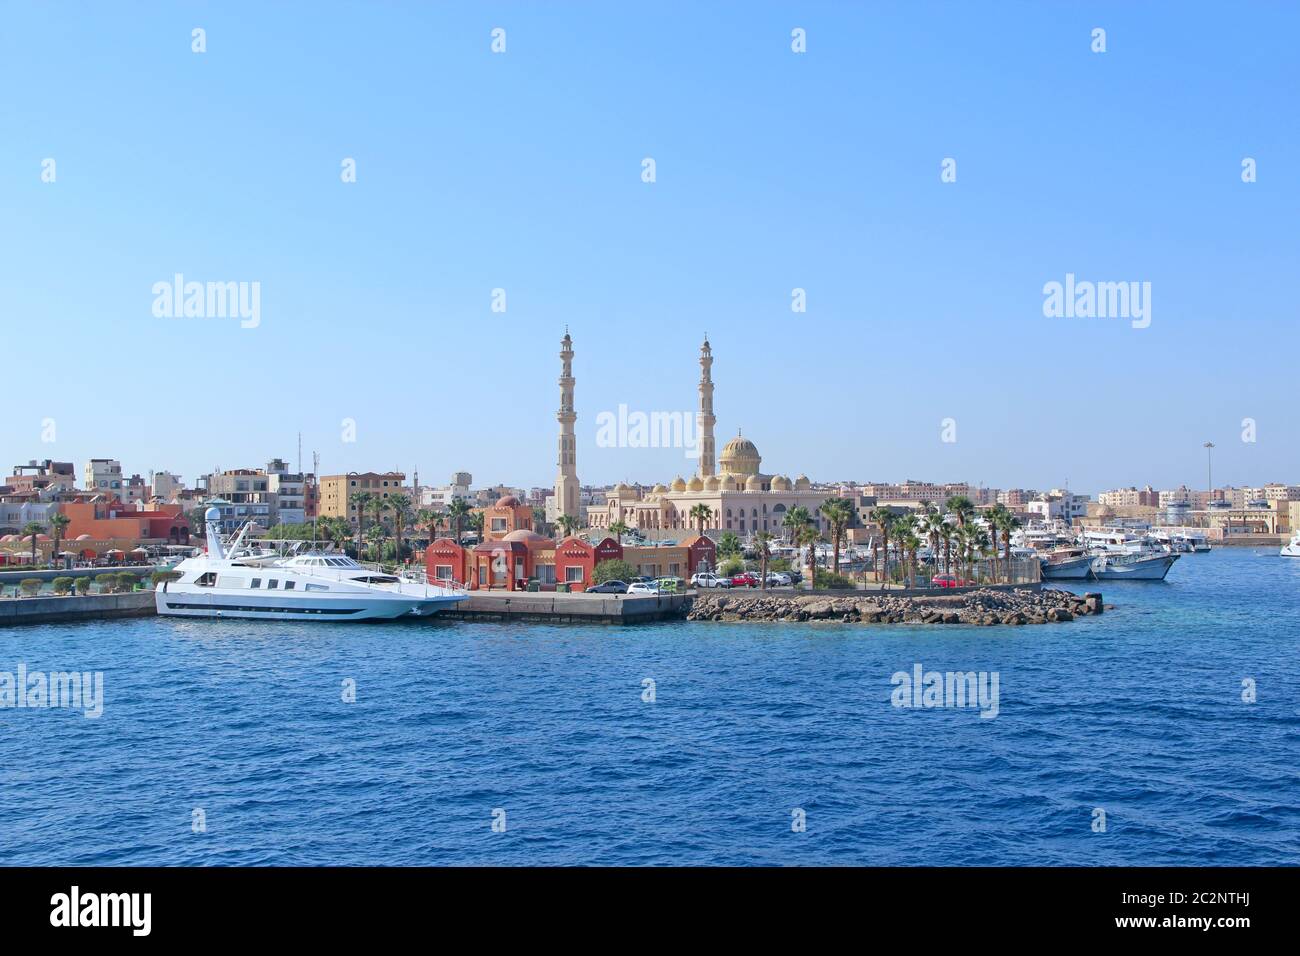 Blick auf den Damm von Hurghada mit festgeschobenen Yachten, Schiffen und einer schönen Moschee Stockfoto